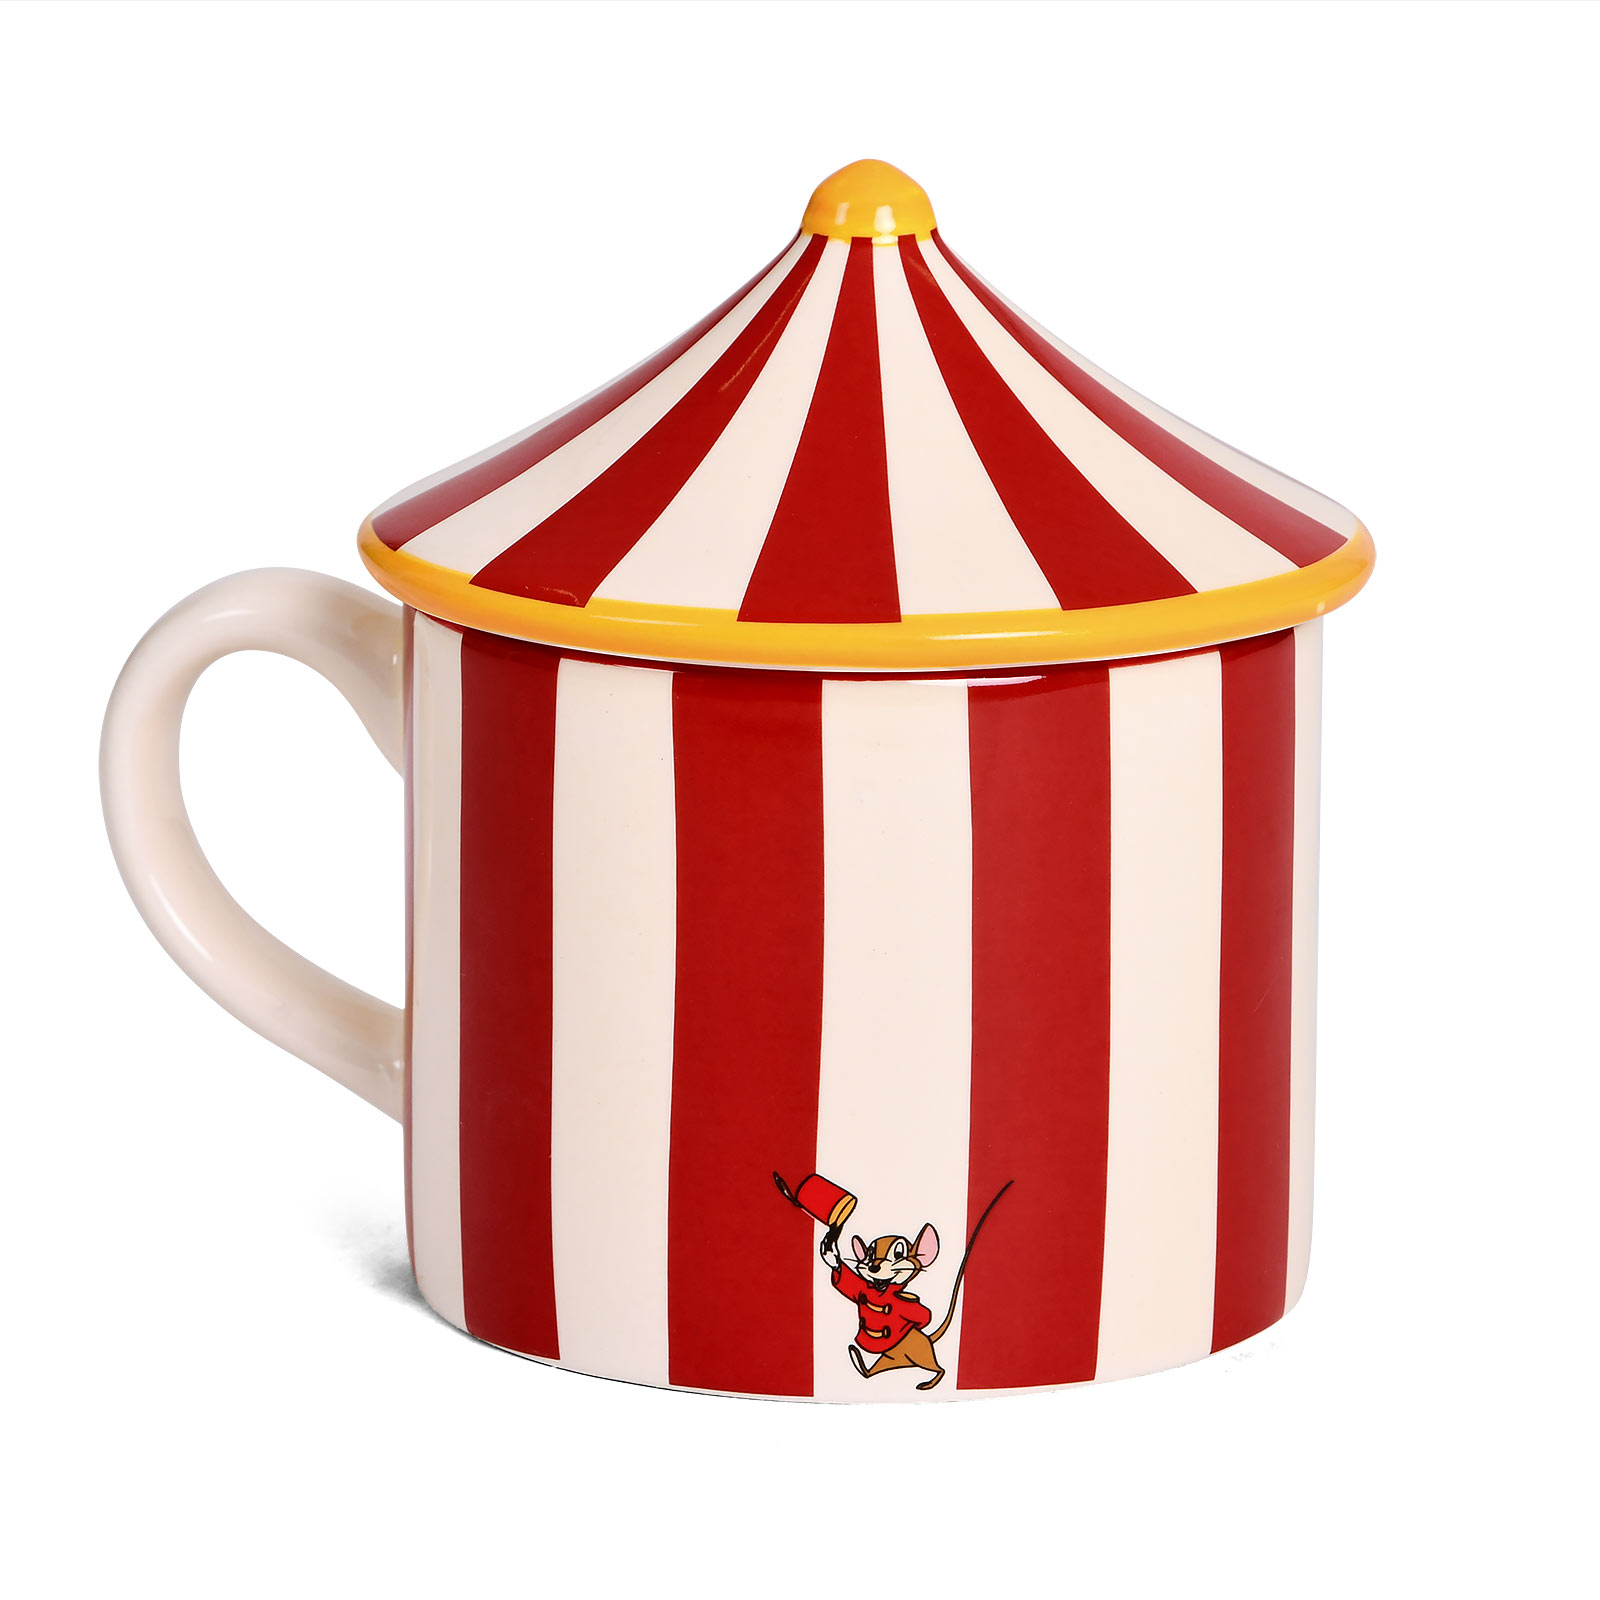 Dumbo - Circus Tent 3D Mug with Lid